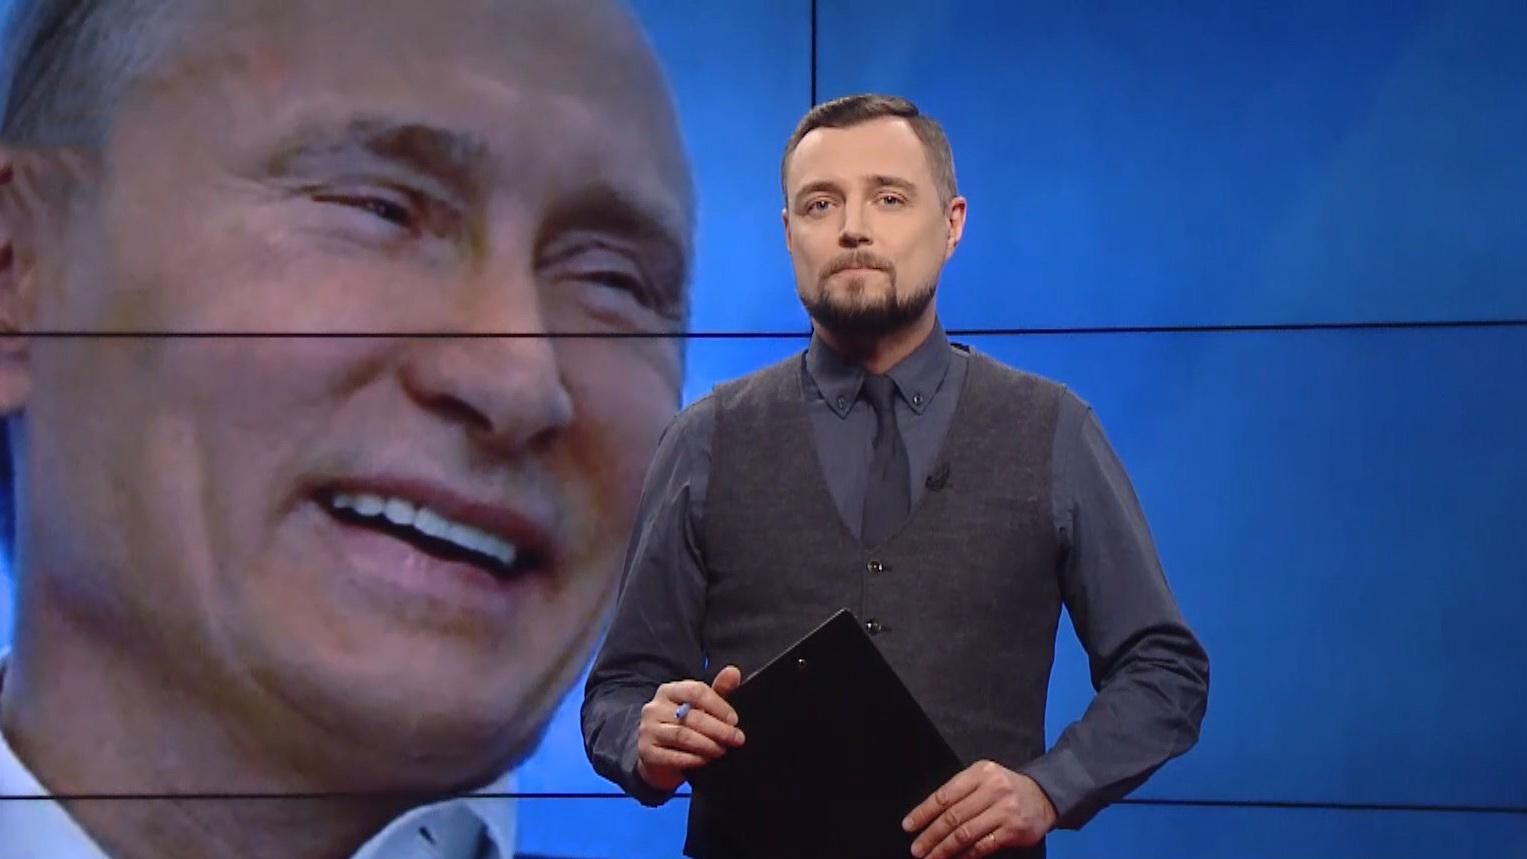 Pro новости: дивиденды от закрытия каналов Медведчука. Навальный "досмеялся"